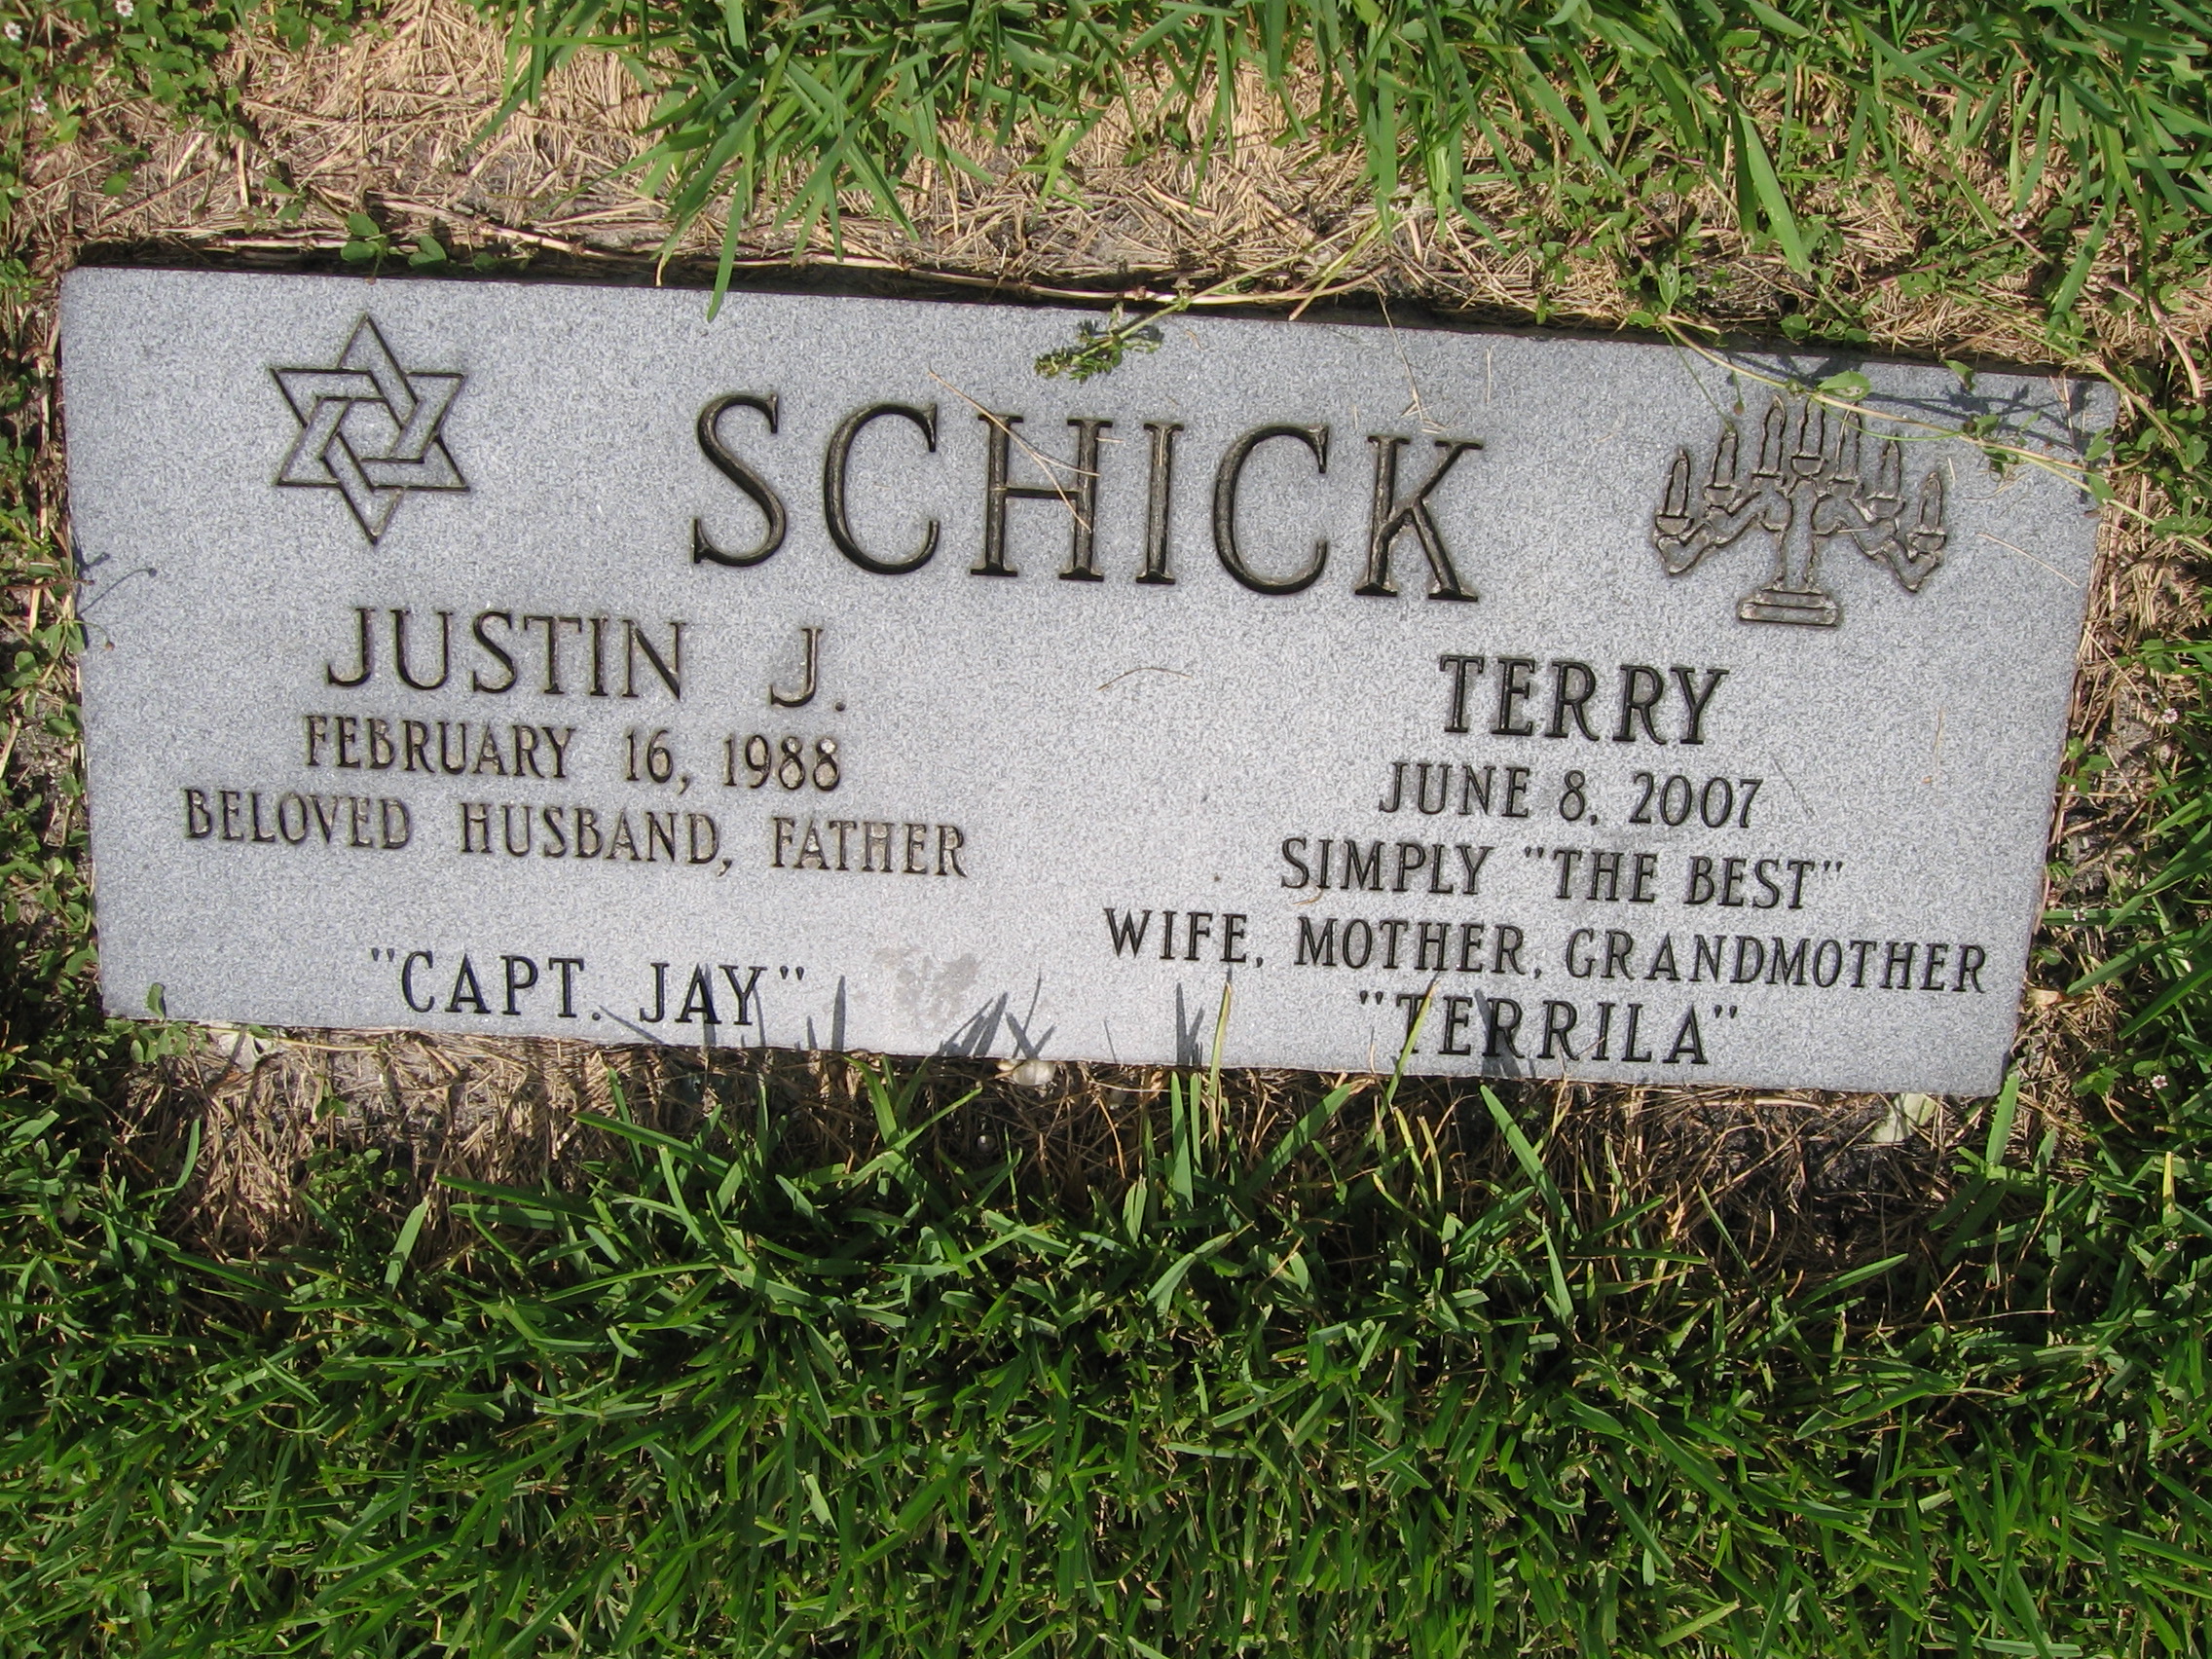 Justin J Schick